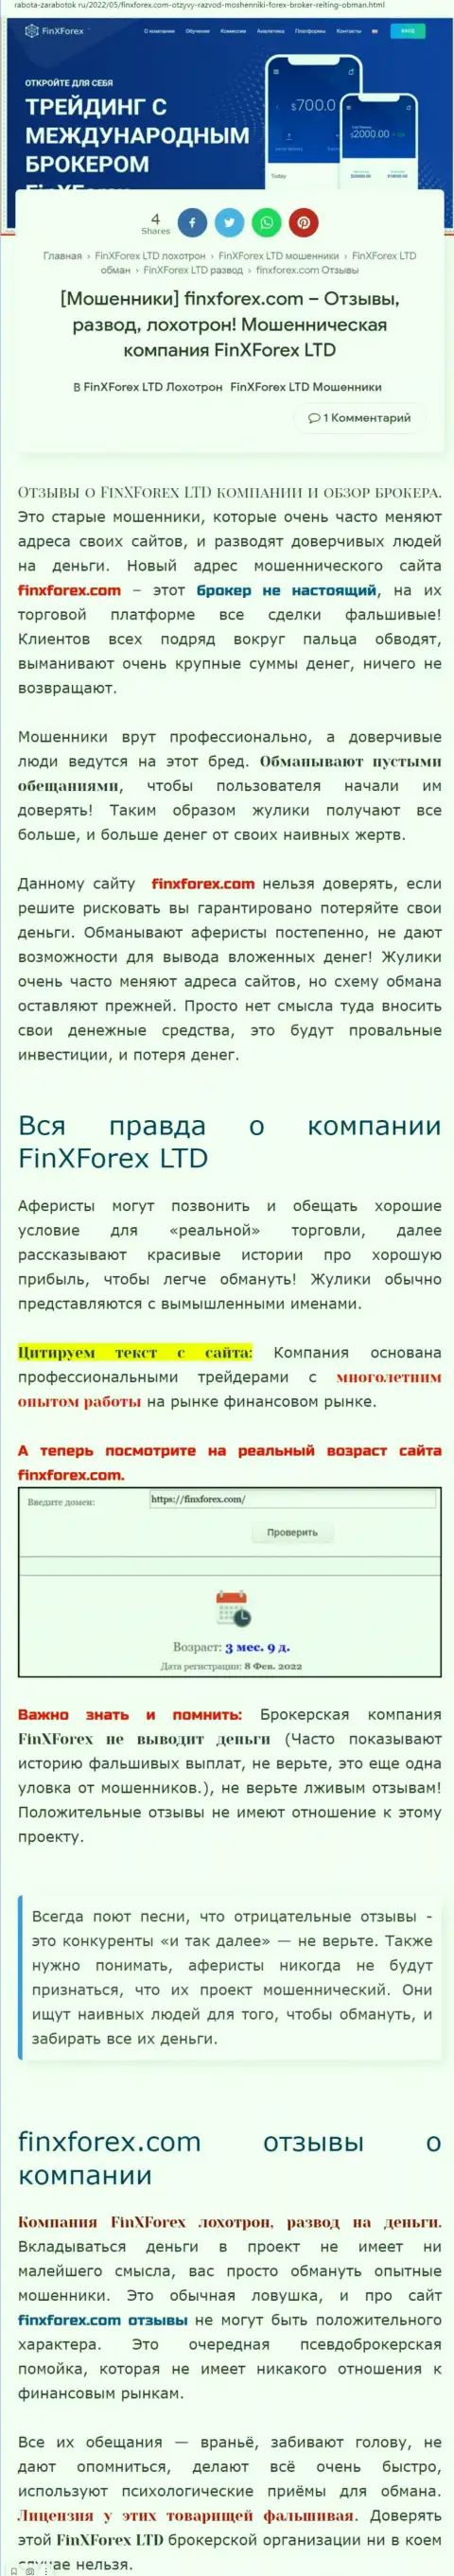 Создатель обзорной статьи о FinXForex Com говорит, что в компании ФинИксФорекс Ком лохотронят